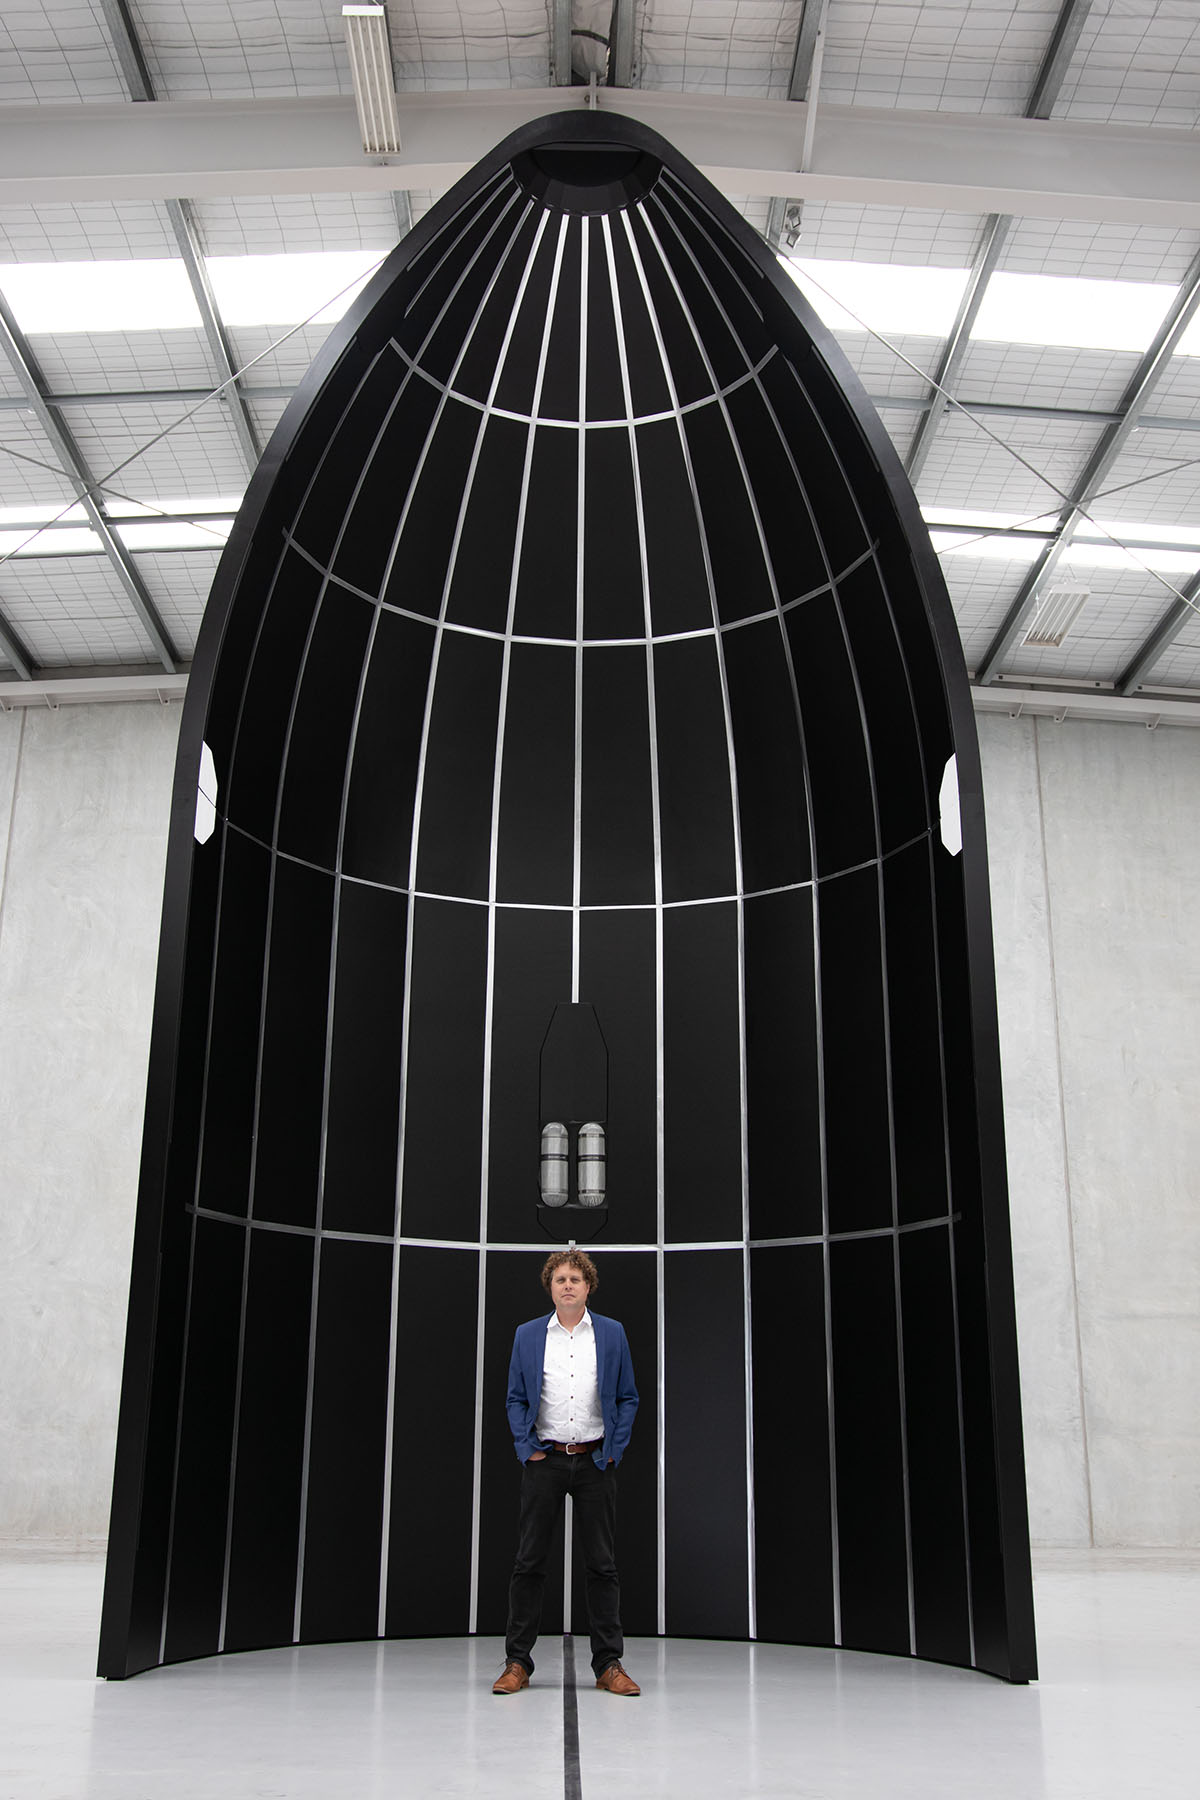 Mitad del carenado del Neutron, Beck se encuentra en el interior demostrando lo grande que será el cohete